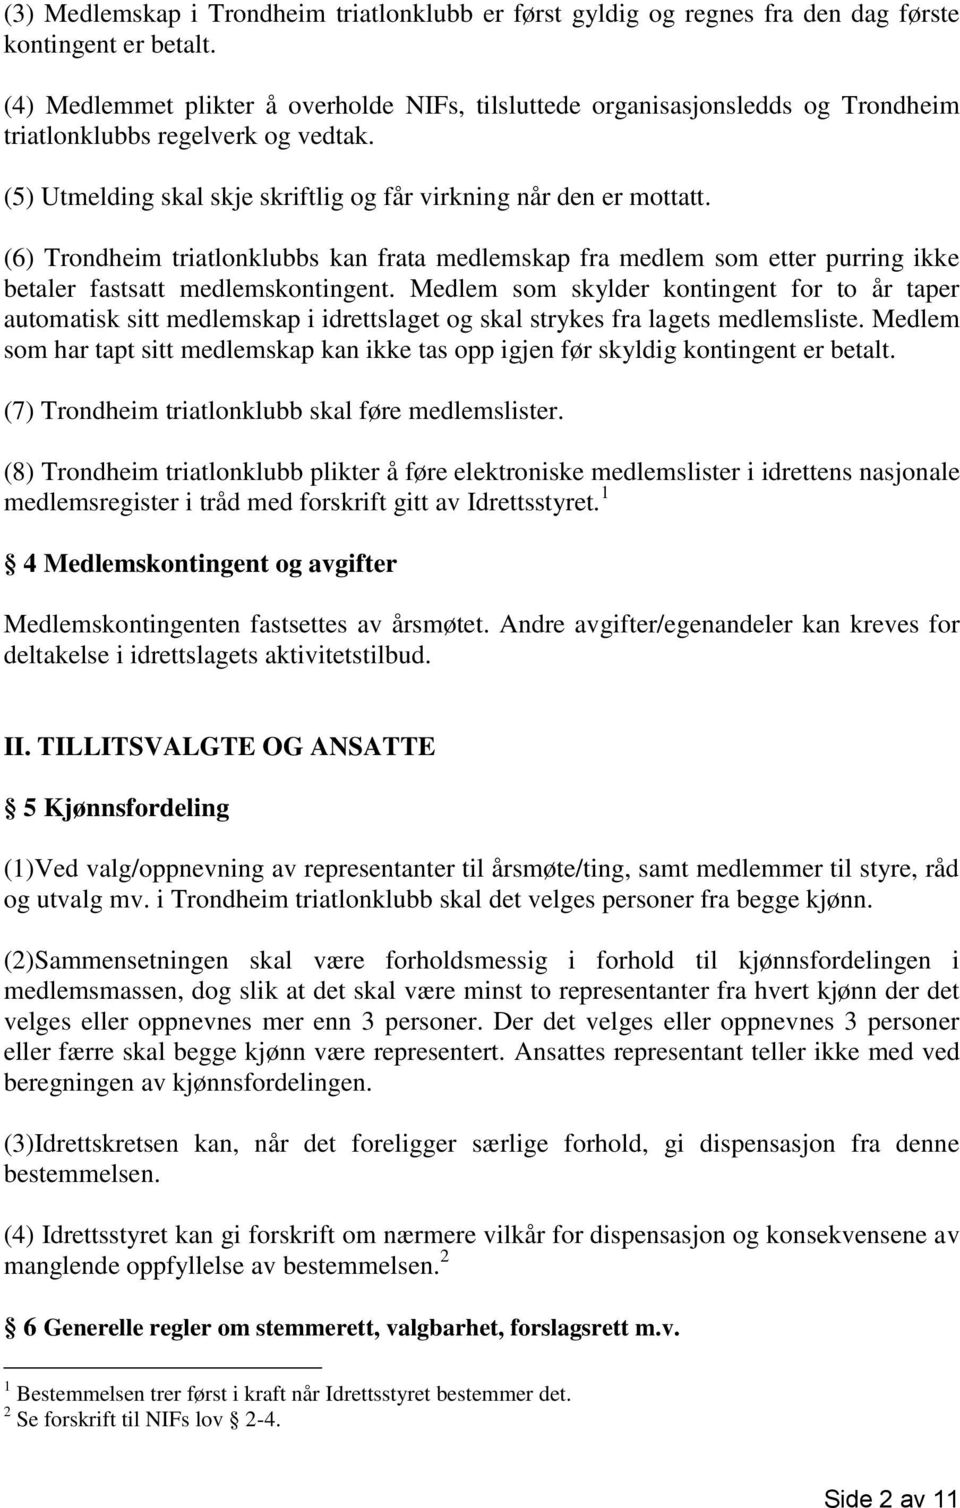 (6) Trondheim triatlonklubbs kan frata medlemskap fra medlem som etter purring ikke betaler fastsatt medlemskontingent.